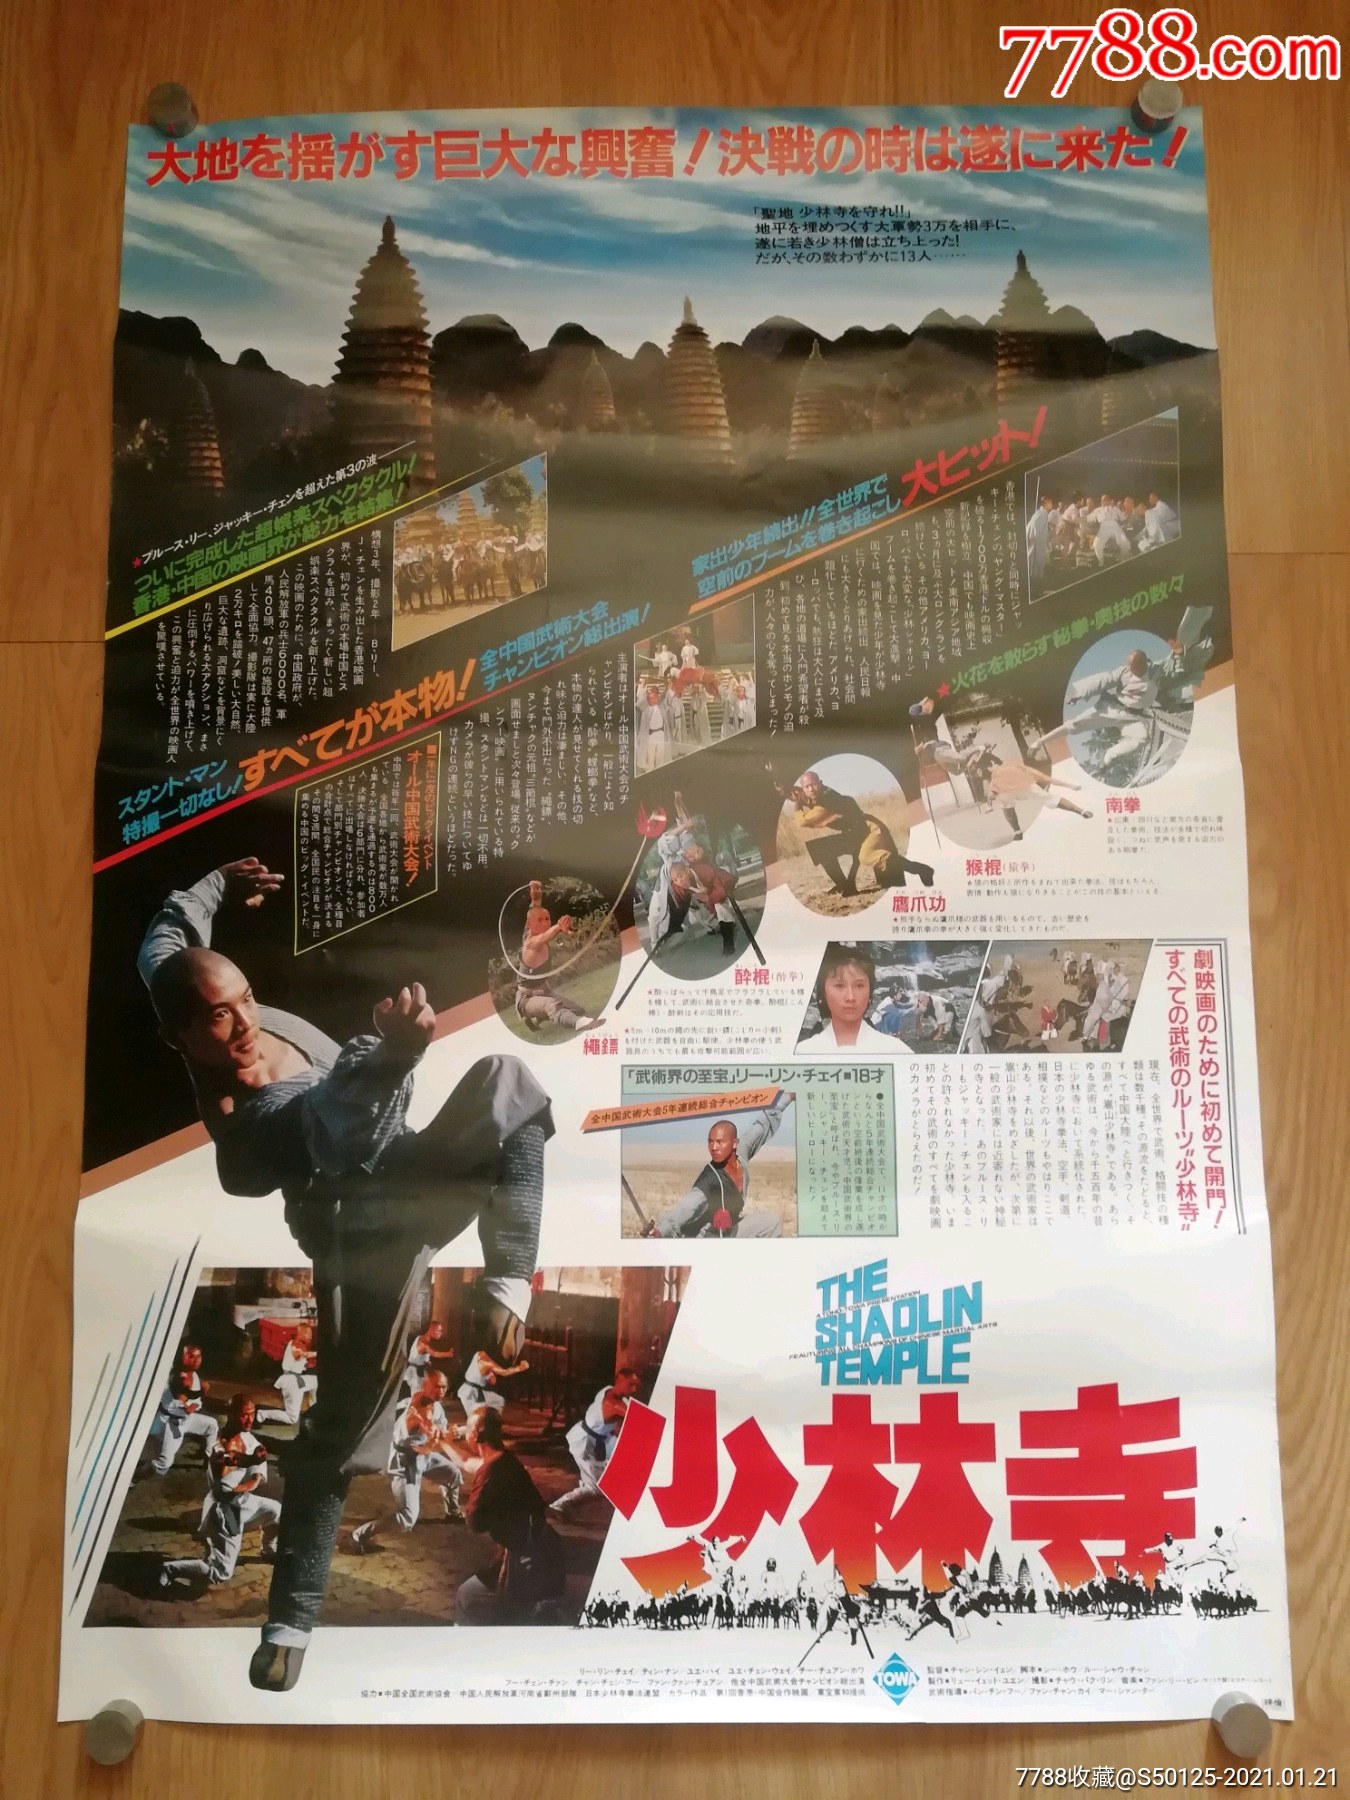 经典电影《少林寺》李连杰/日本一开版原版电影海报